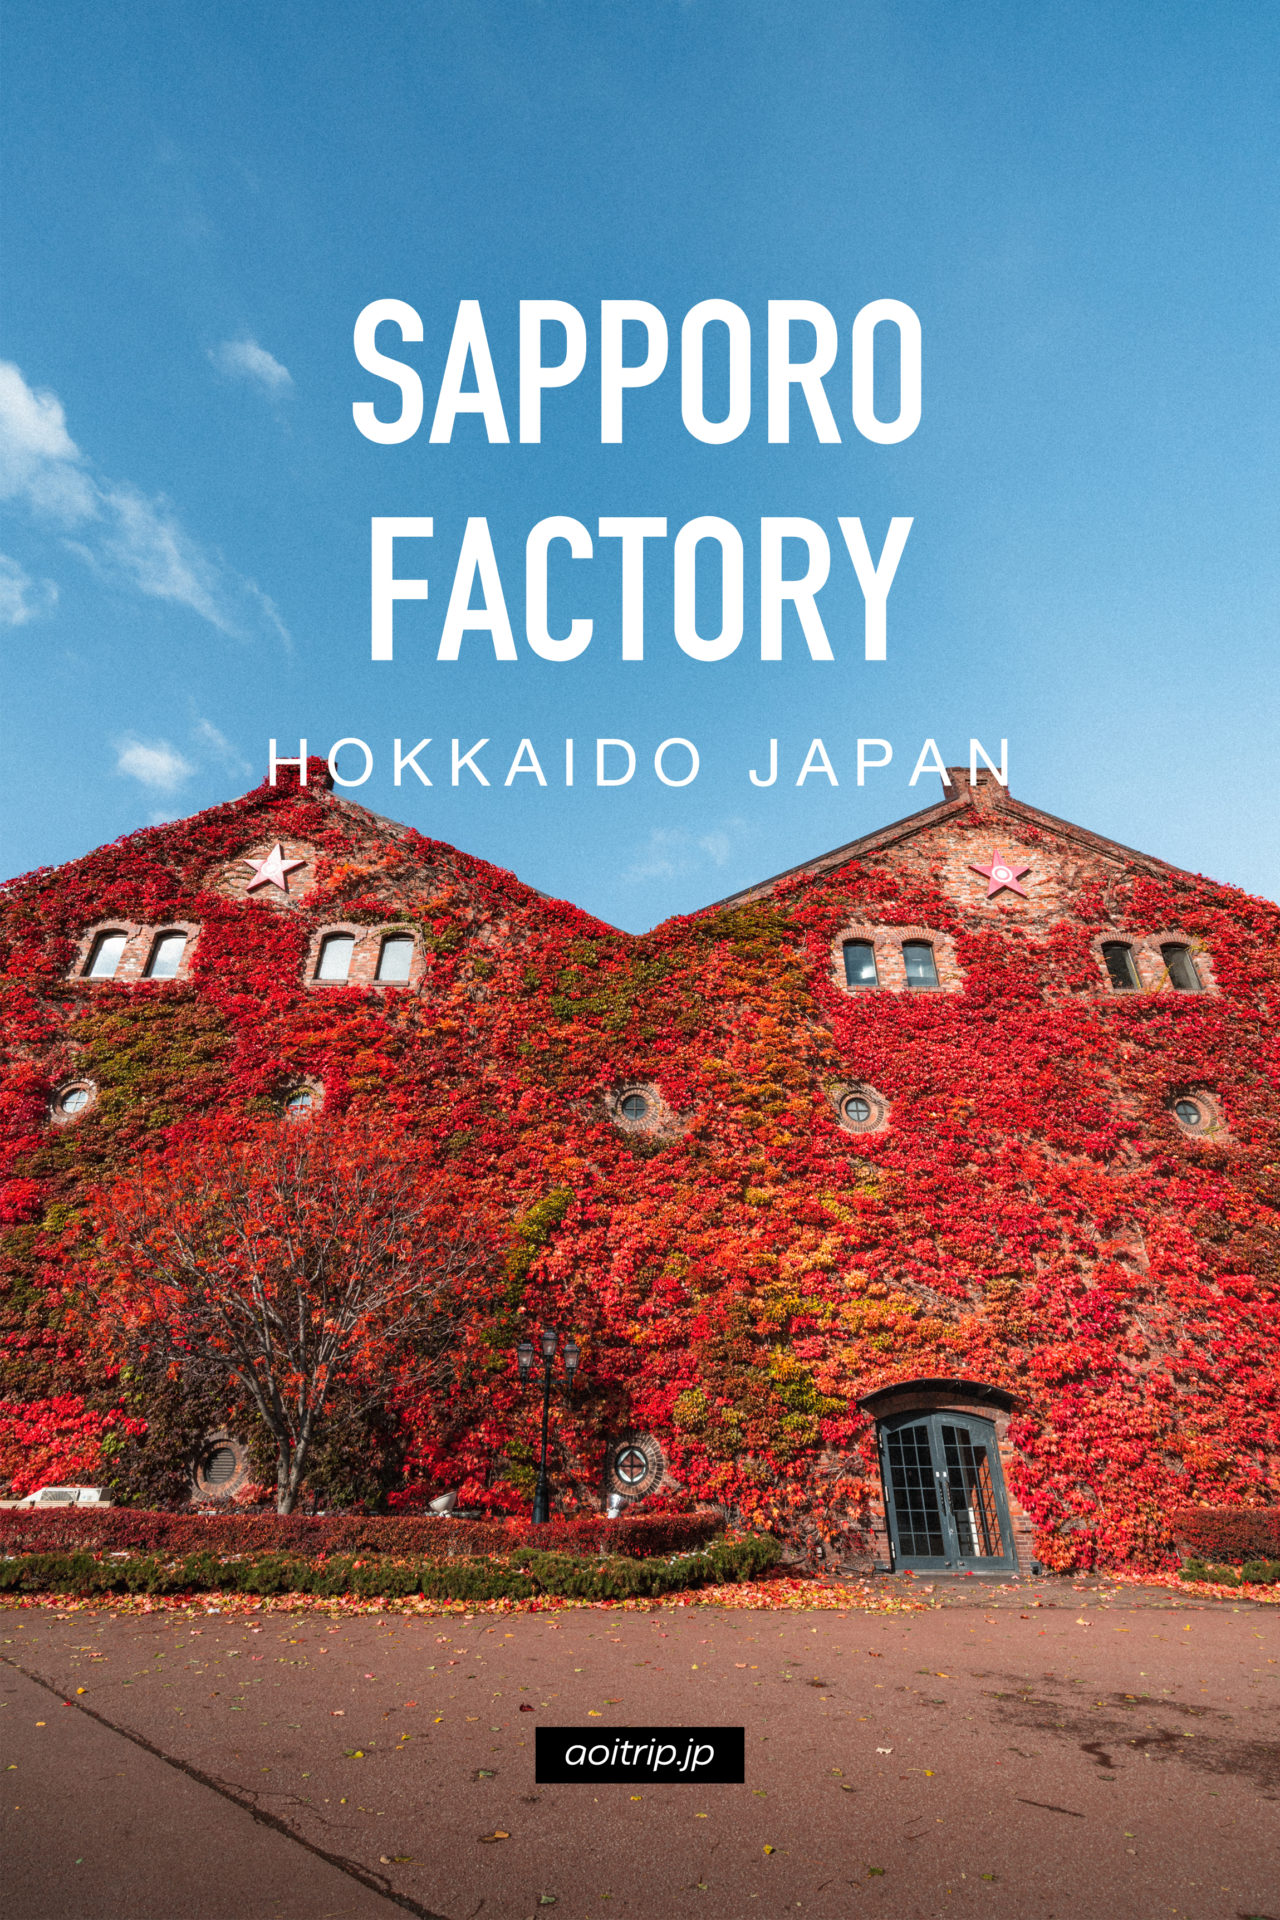 蔦紅葉が彩るサッポロファクトリー赤煉瓦館｜Sapporo Factory, Hokkaido